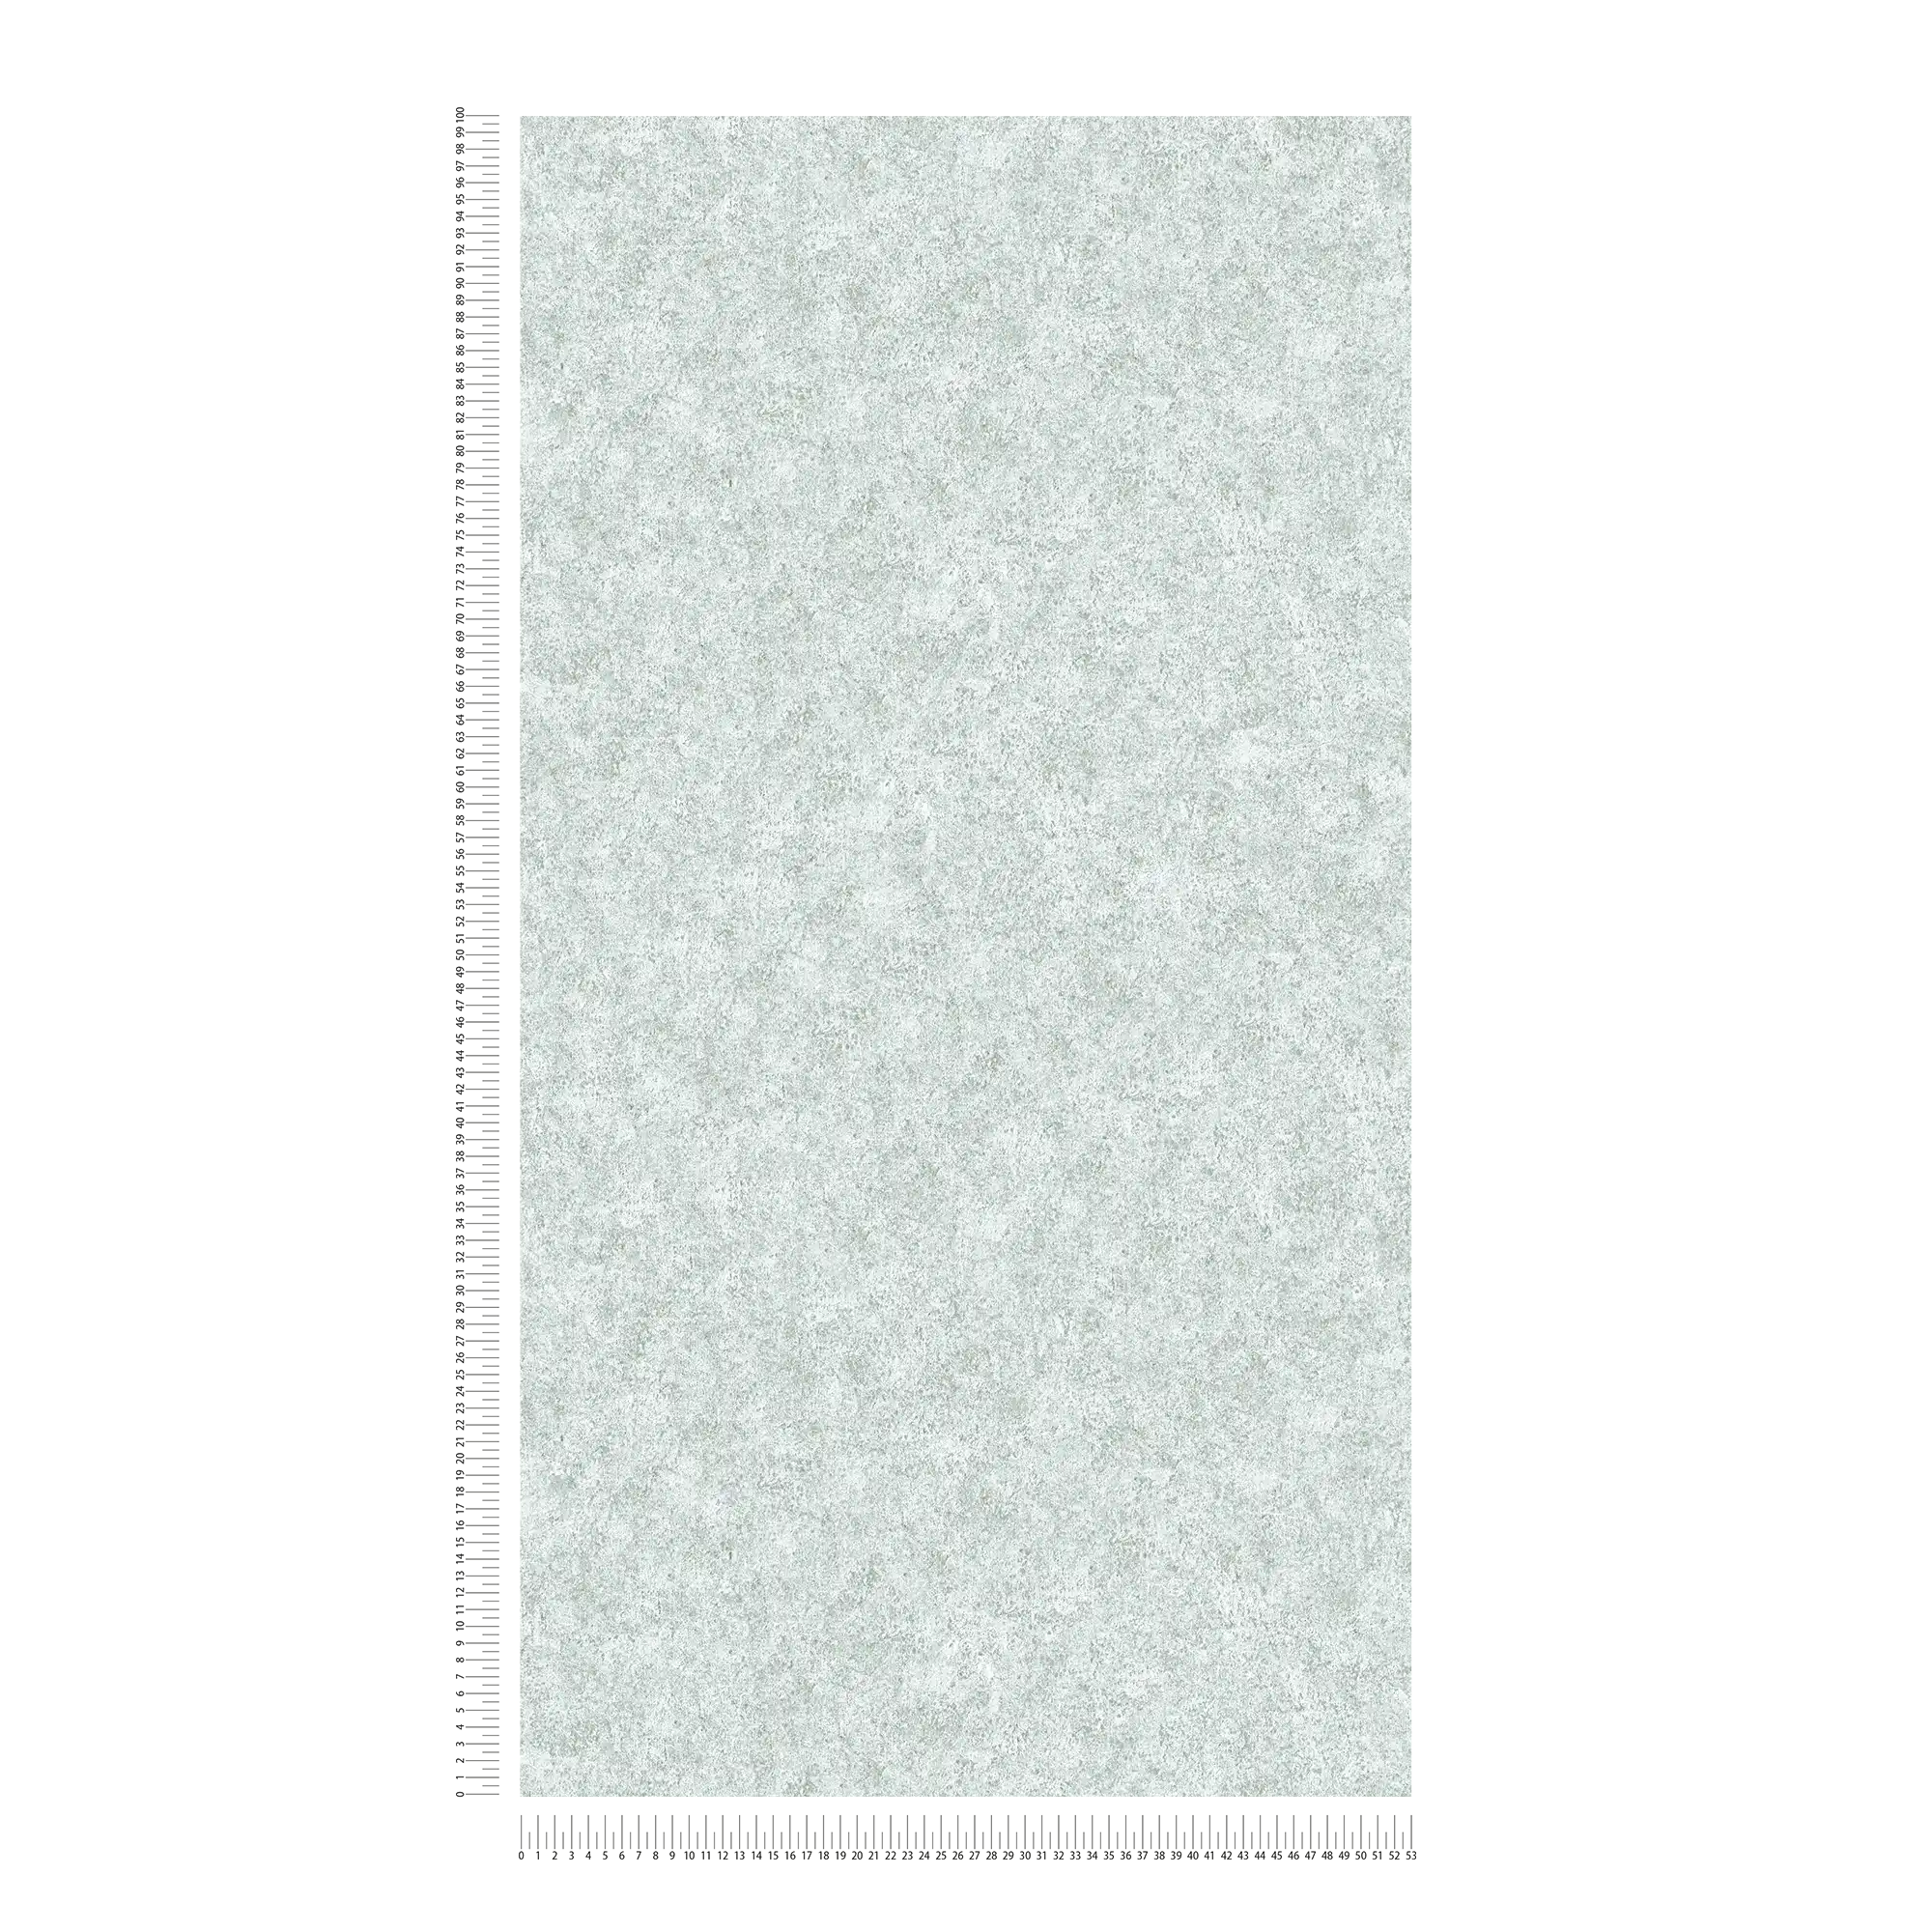             Papier peint gris chiné avec aspect pierre marbrée
        